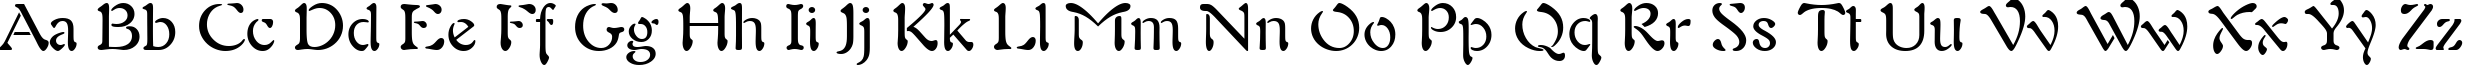 Пример написания английского алфавита шрифтом Freeform 721 BT